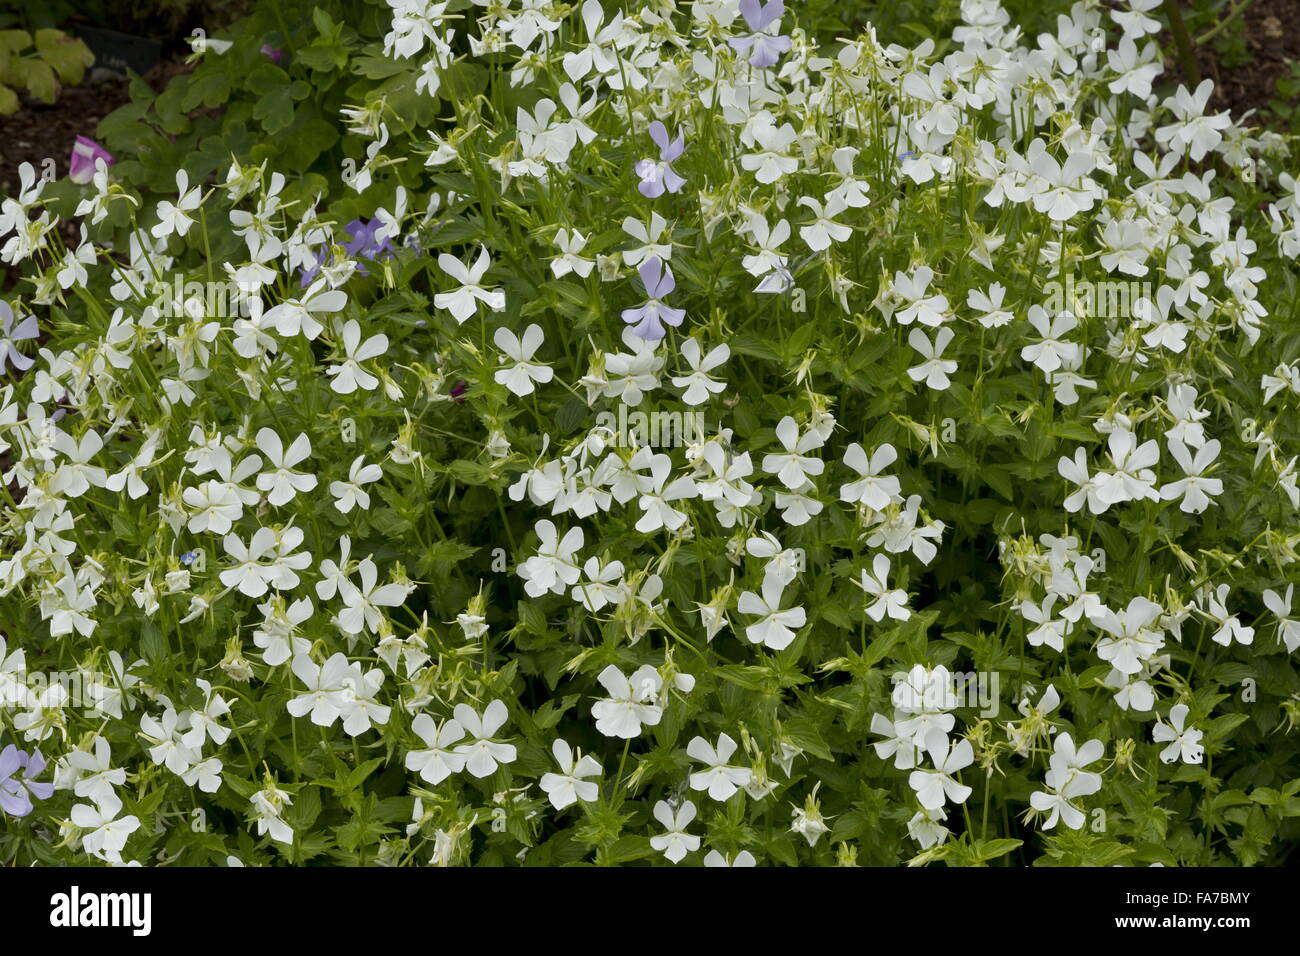 Horned Violet, Viola cornuta, mainly white form, in flower in garden border. Stock Photo